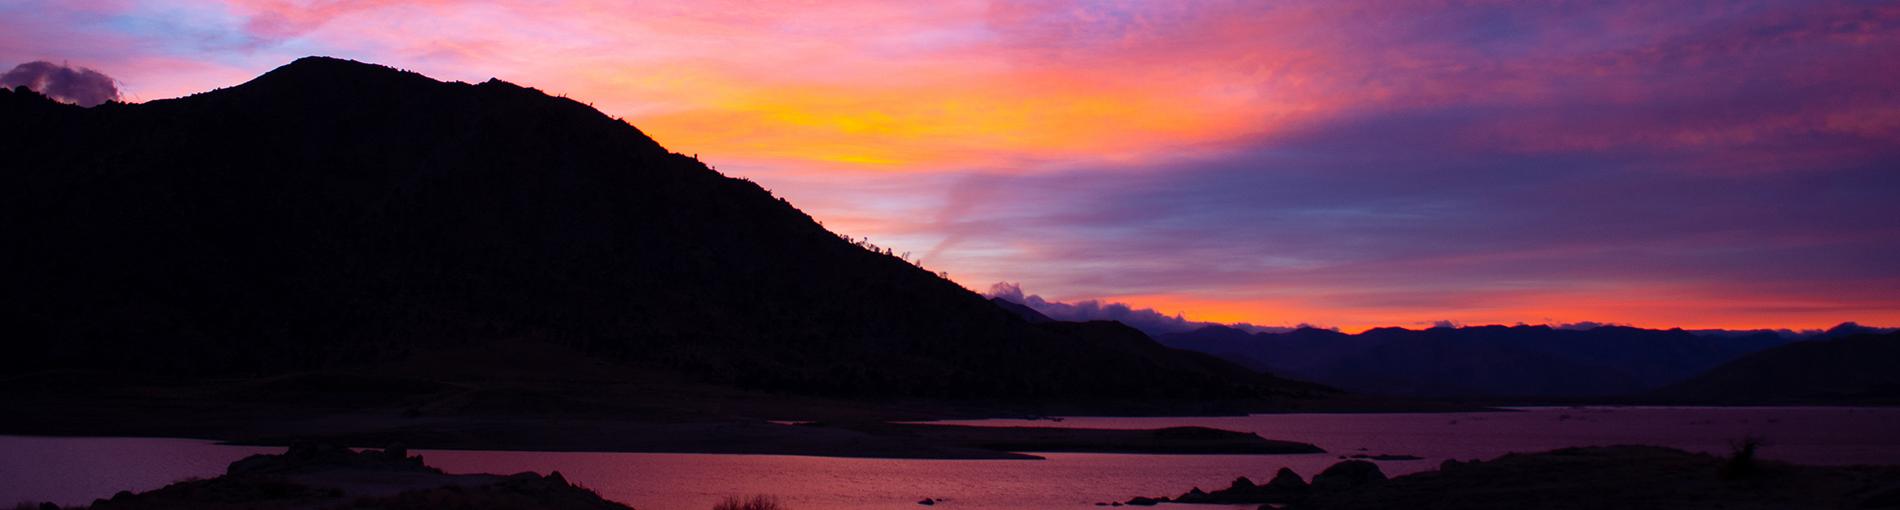 伊莎贝拉湖日落-照片由艾米·纳尔逊